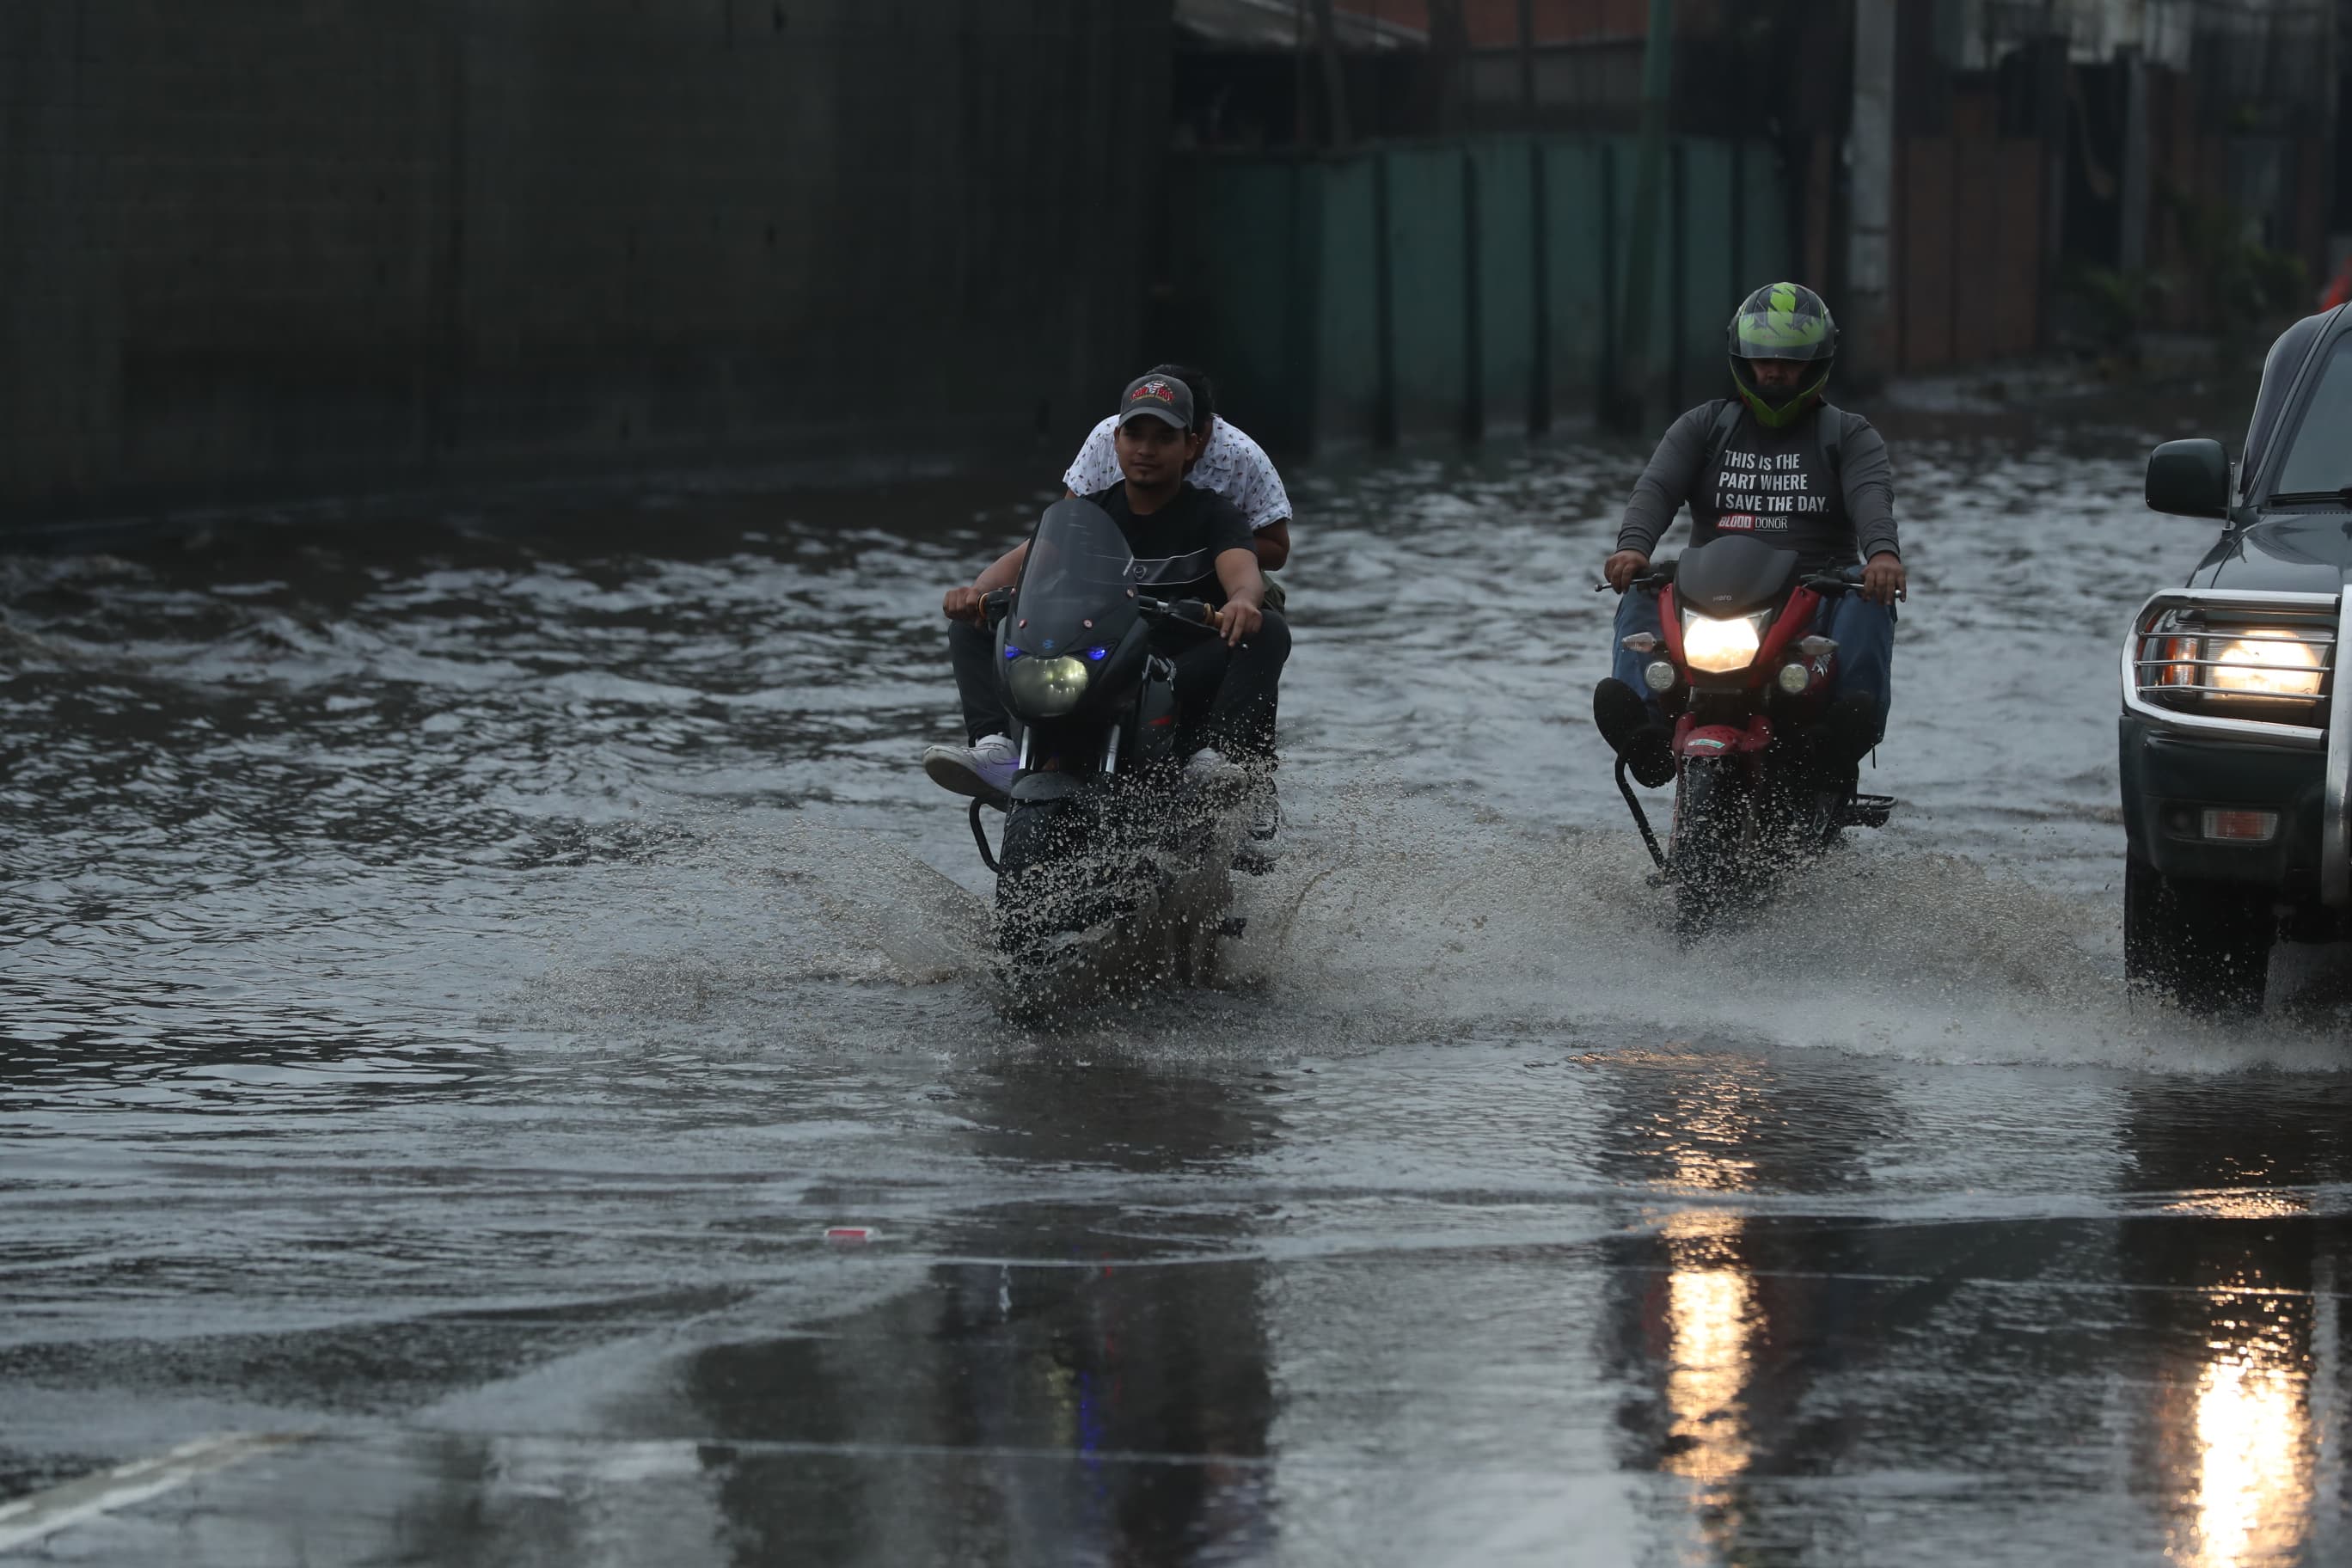 La lluvia continuará afectando el territorio nacional este 24 de junio, según la previsión del Insivumeh. (Foto Prensa Libre: E. García)